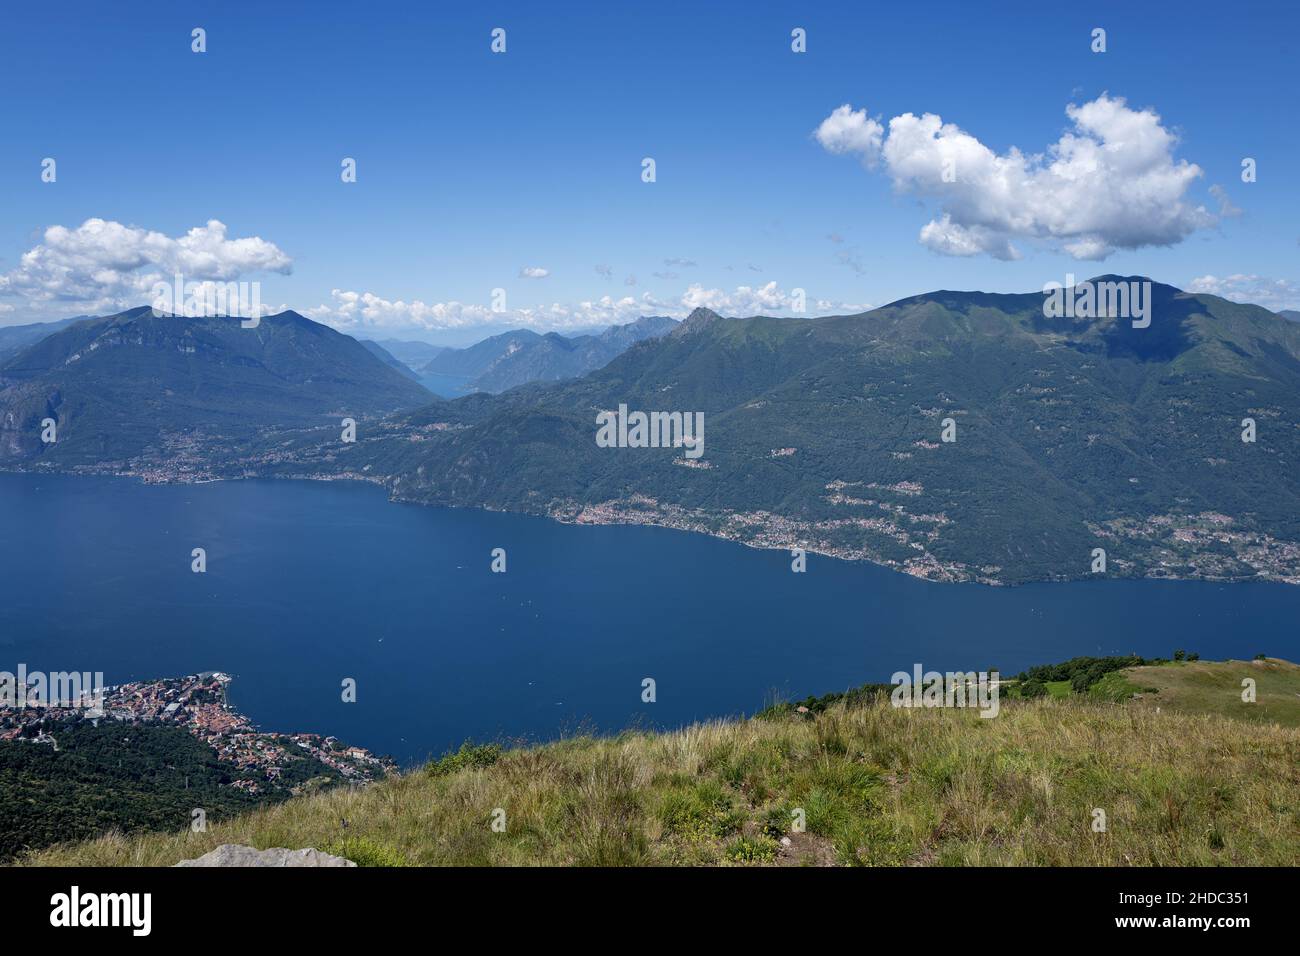 Vista superior del lago Como y los Alpes lo rodean en un trekking de verano. Foto de stock